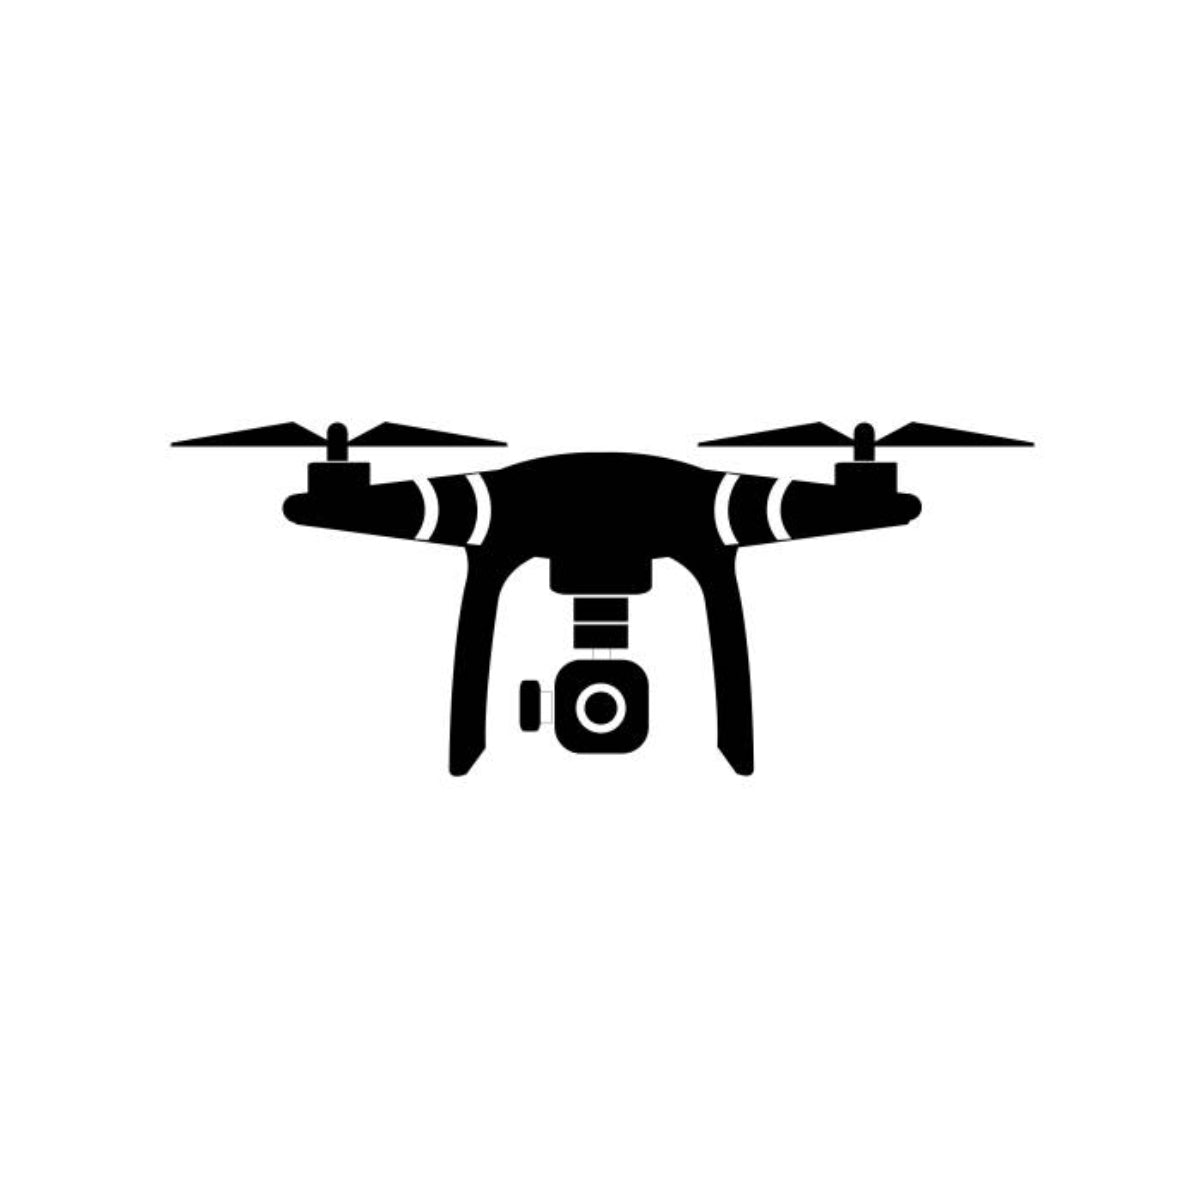 Camera Drones